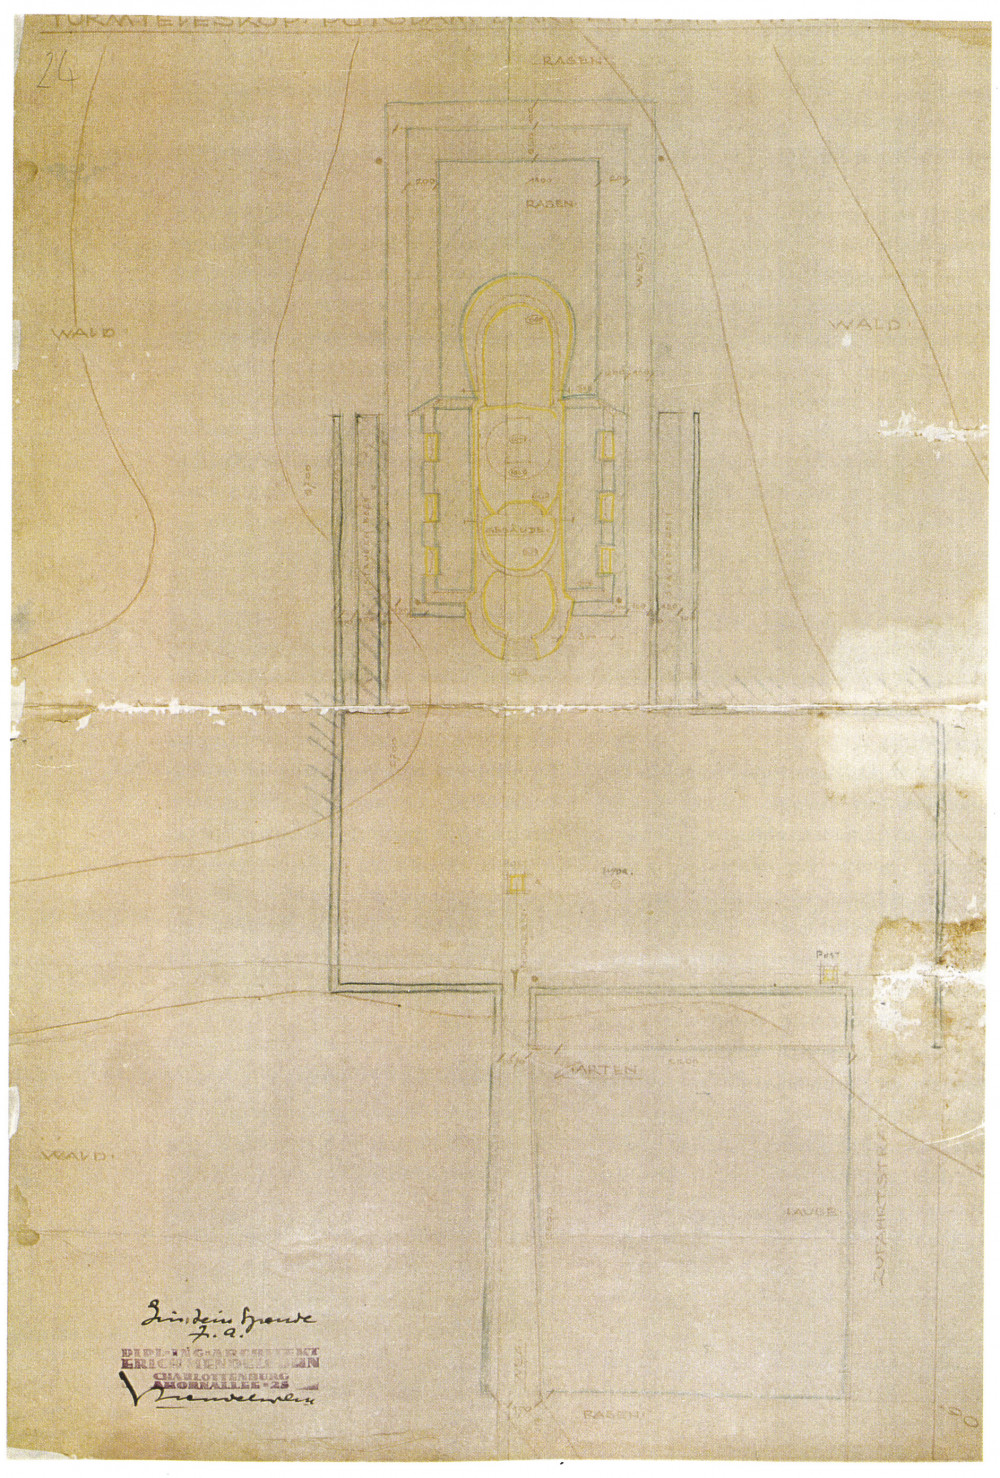 Richard Neutras Plan für den Garten des Einsteinturms